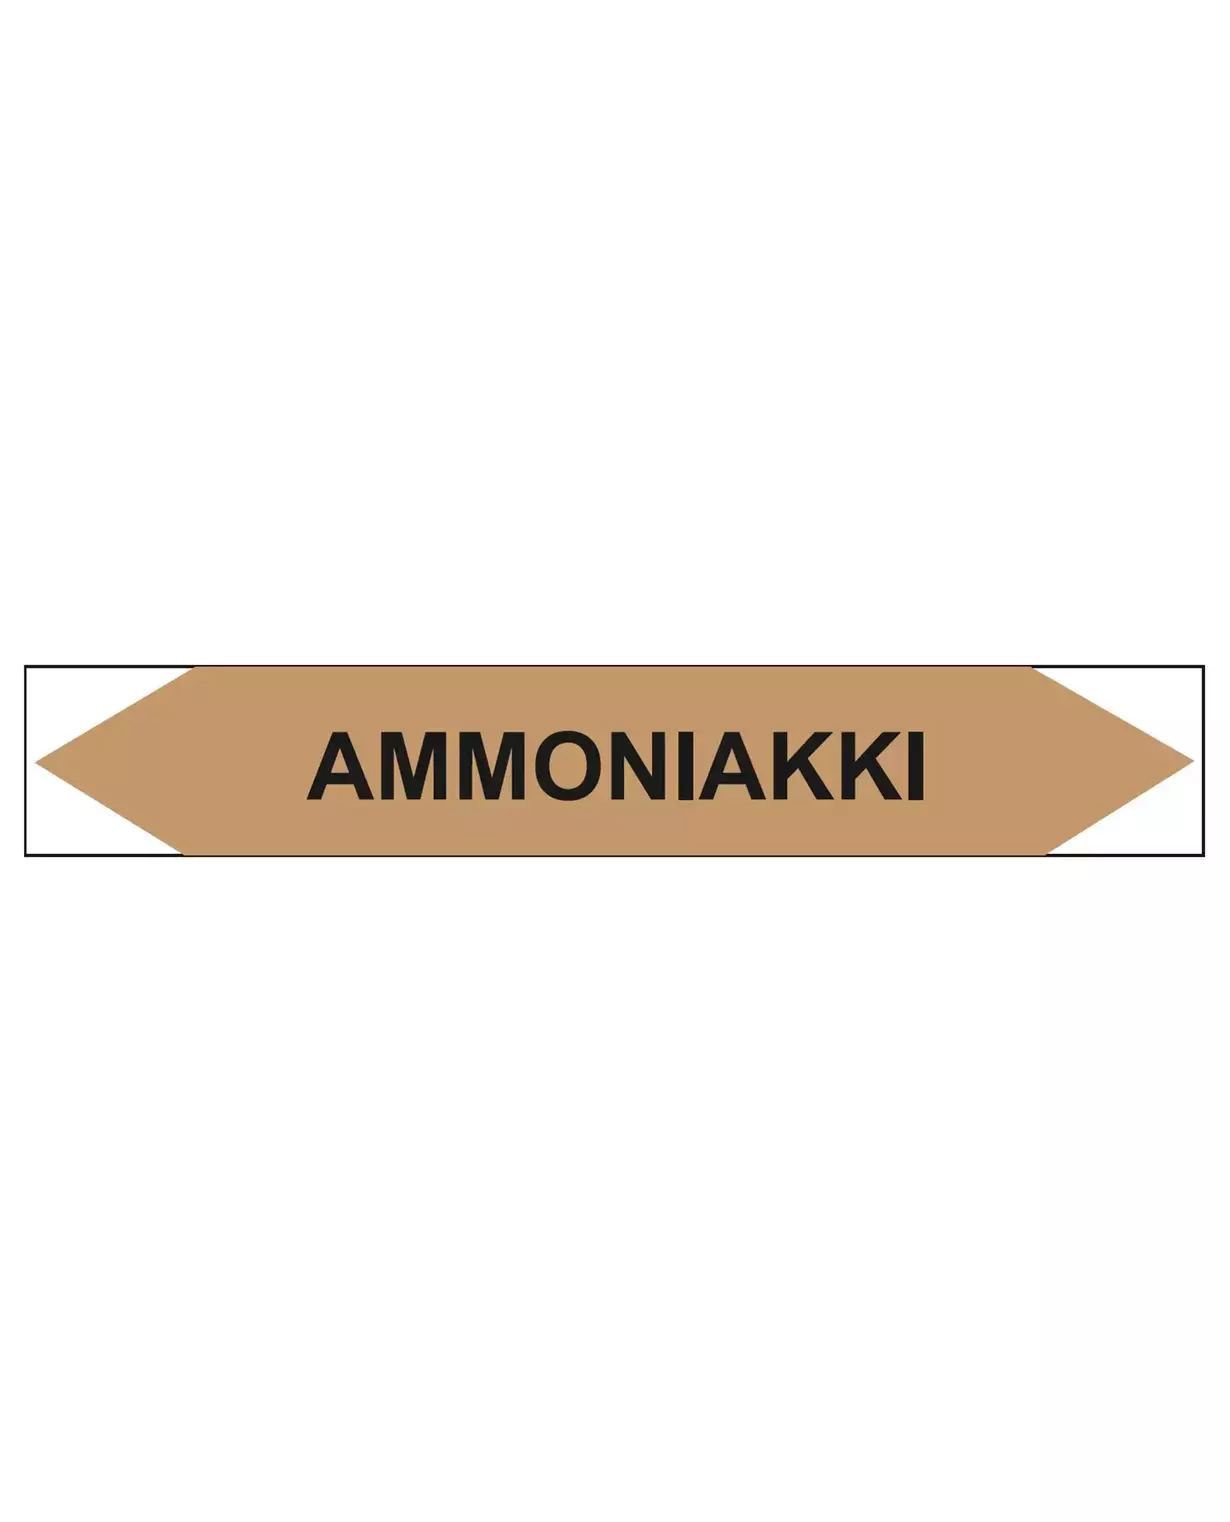 Ammoniakki, 160x25 mm